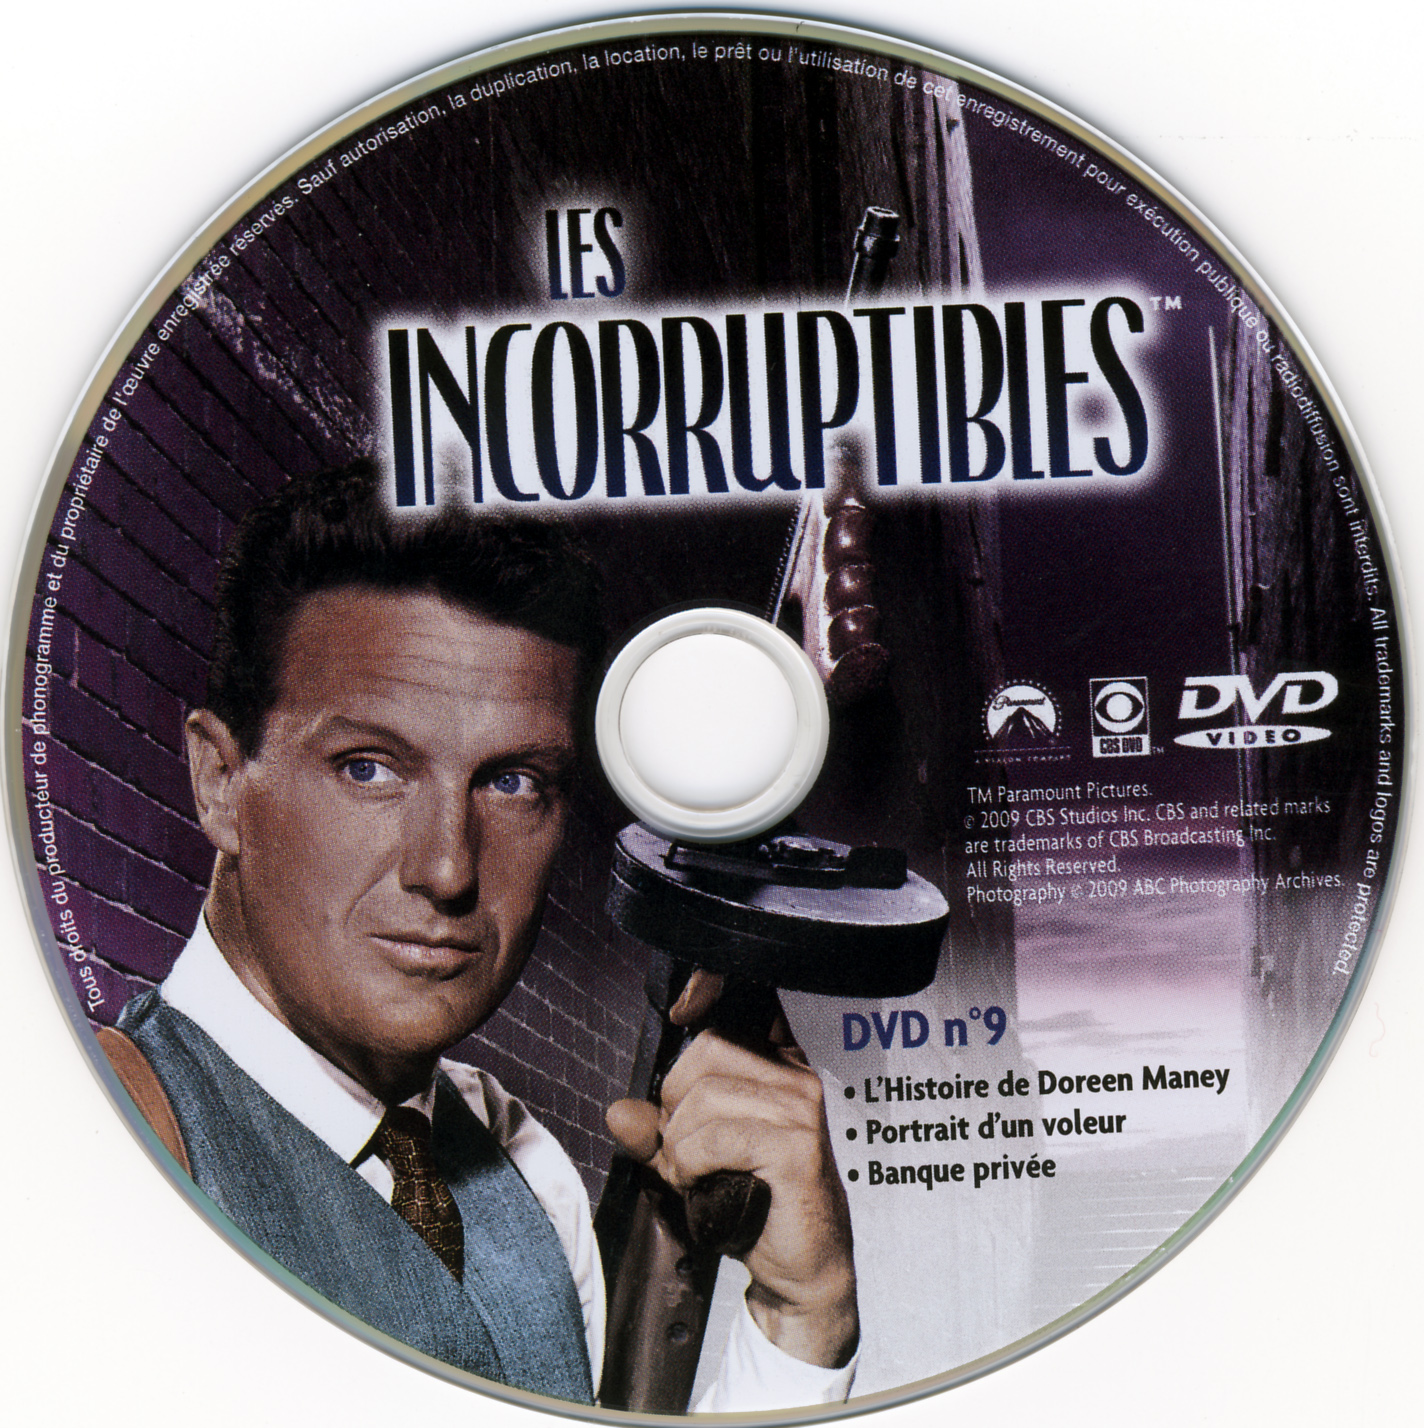 Les incorruptibles intgrale DVD 09